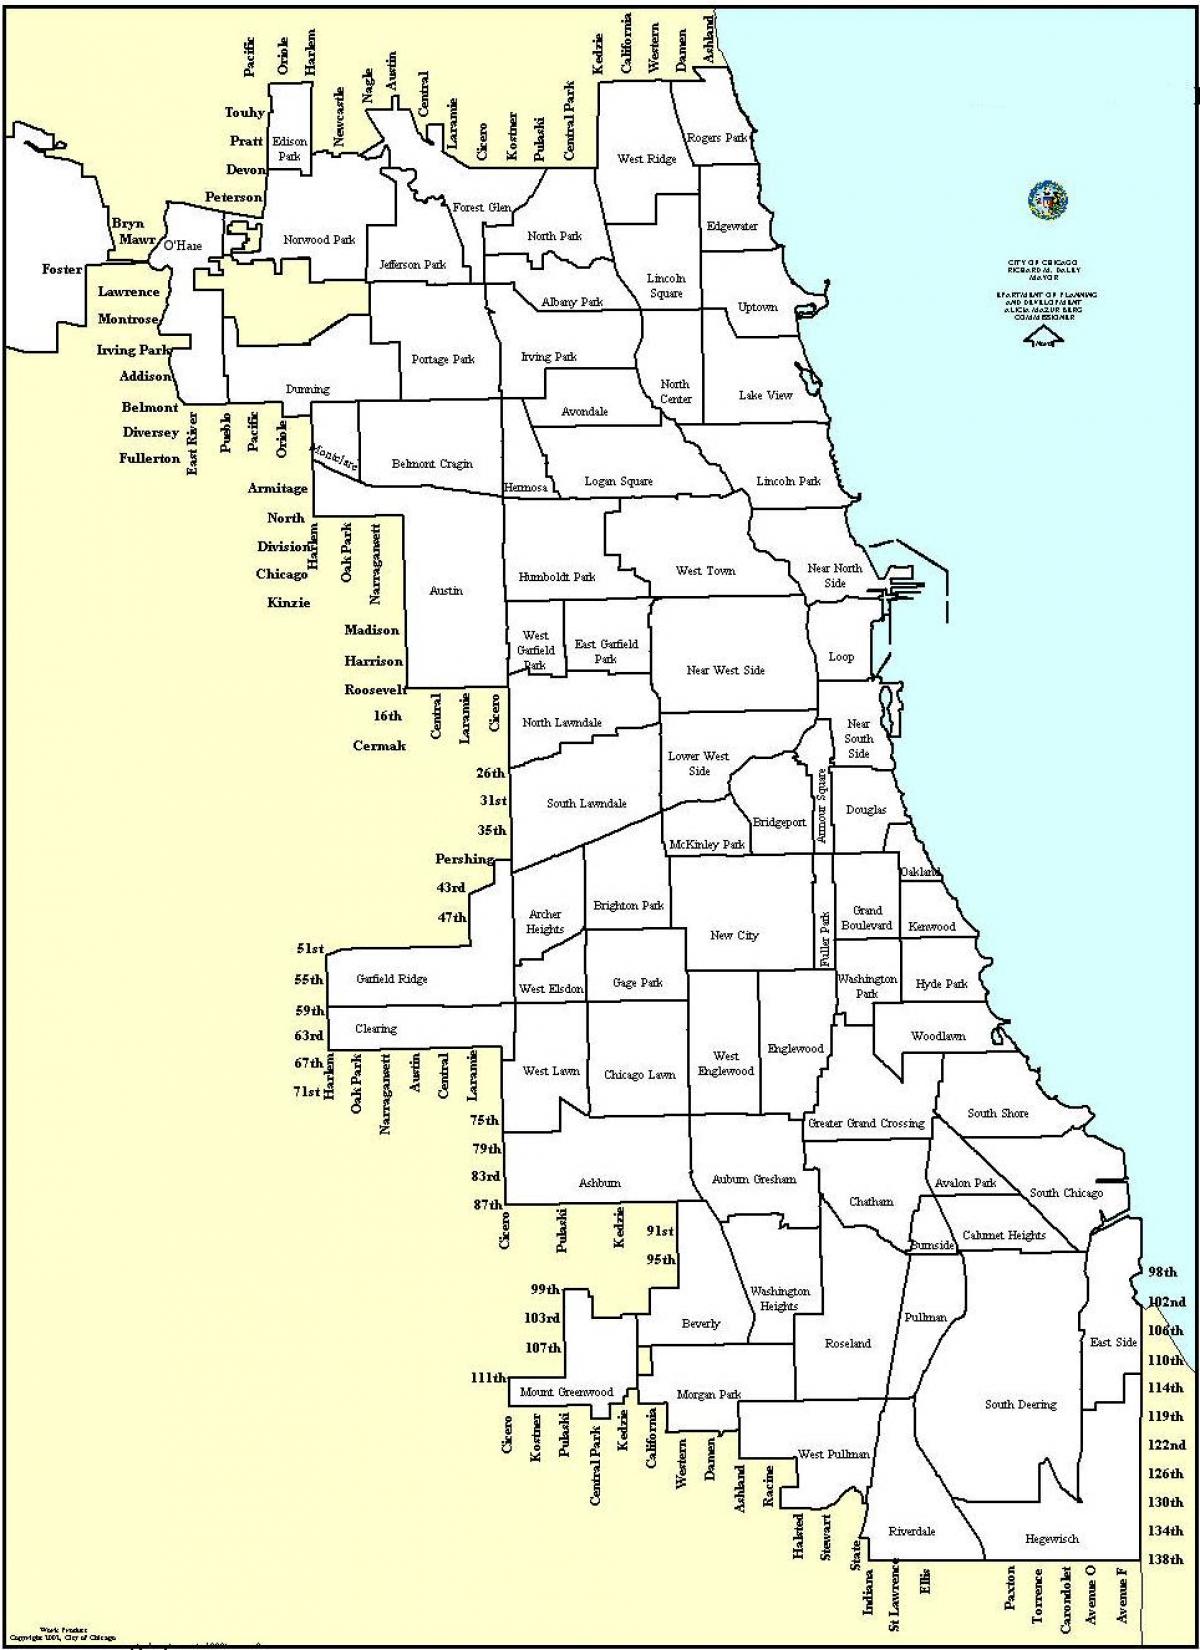 zagospodarowania przestrzennego mapie Chicago